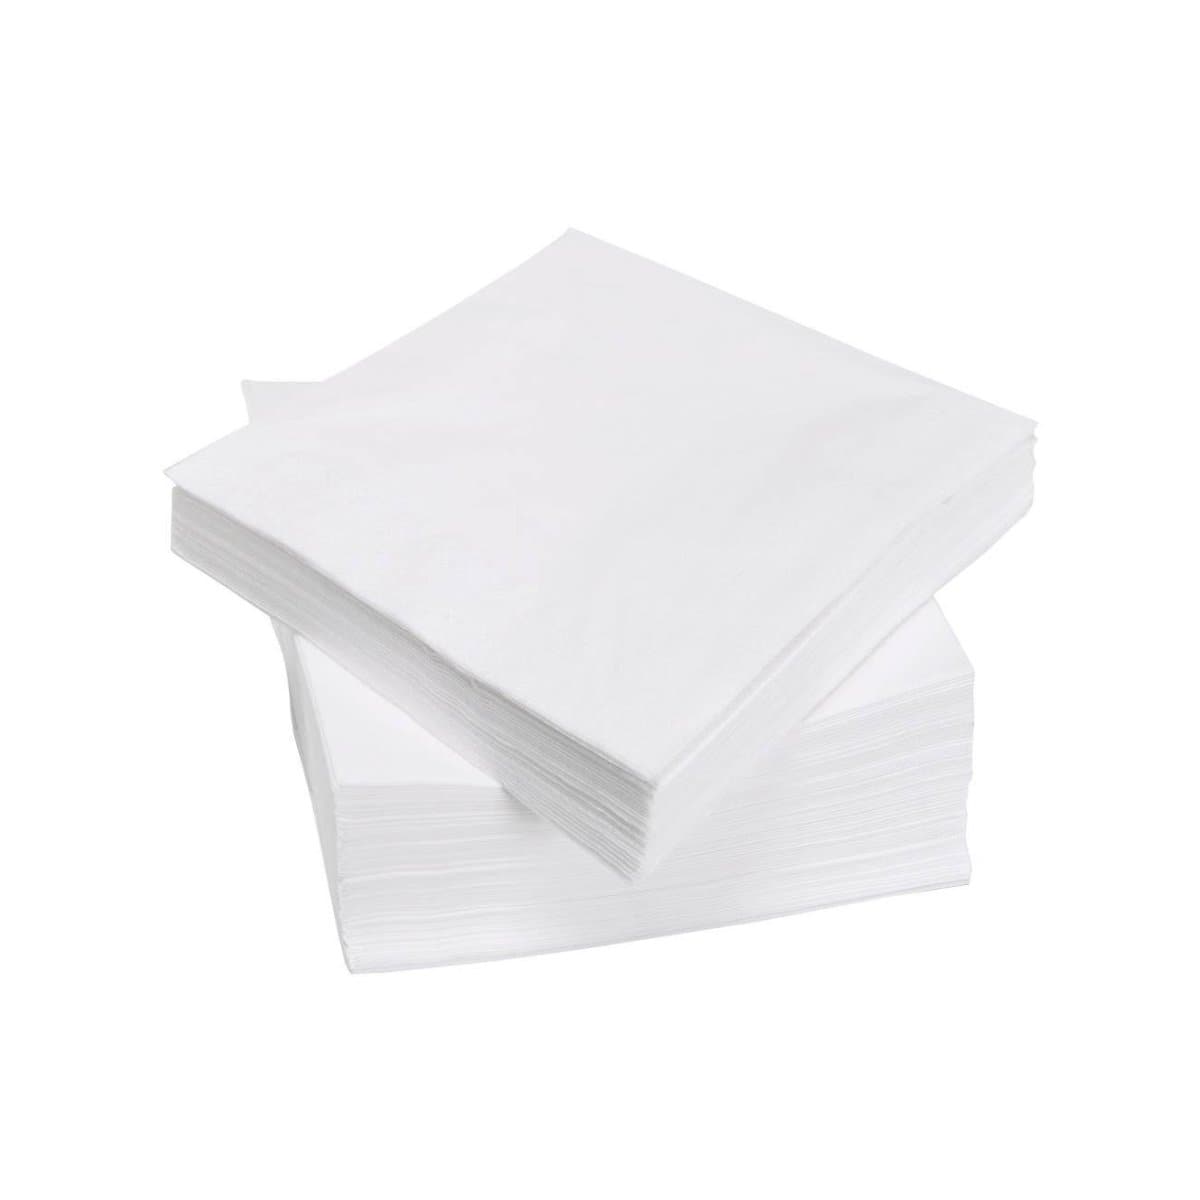 Table Napkins, 100/pack, White